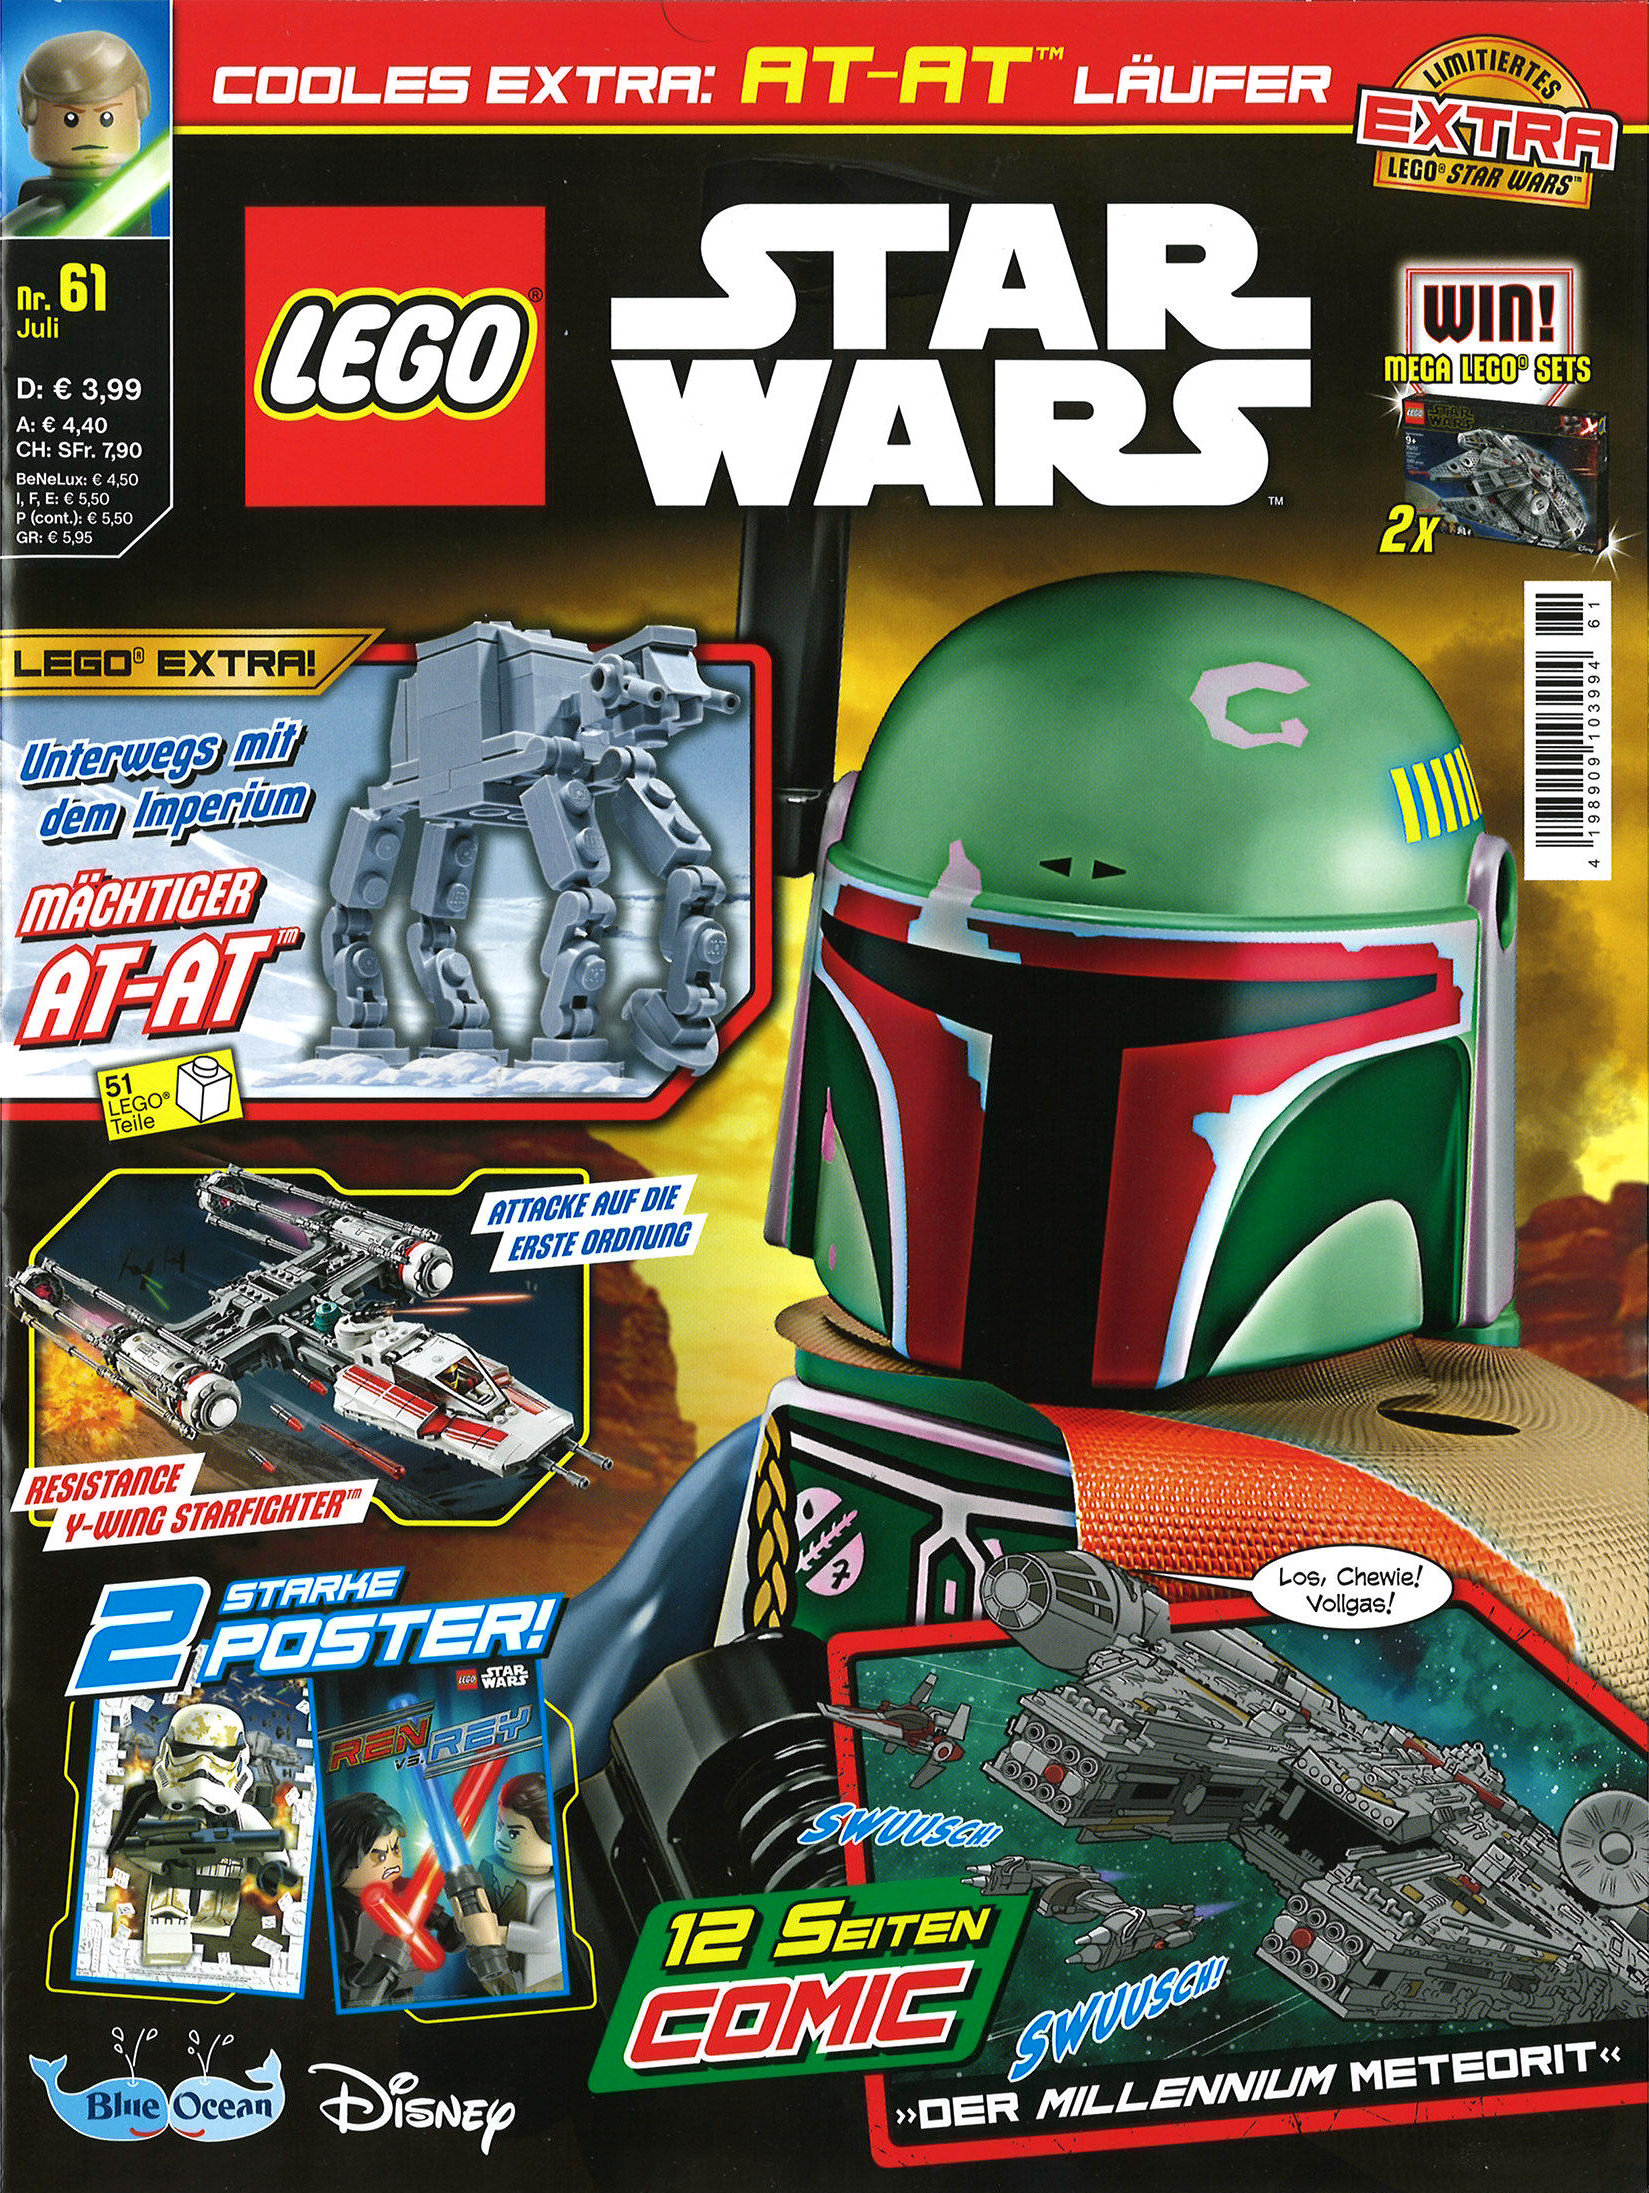 LEGO Star Wars #61 - Boba Fett Collectibles Boba Fett Fan Club